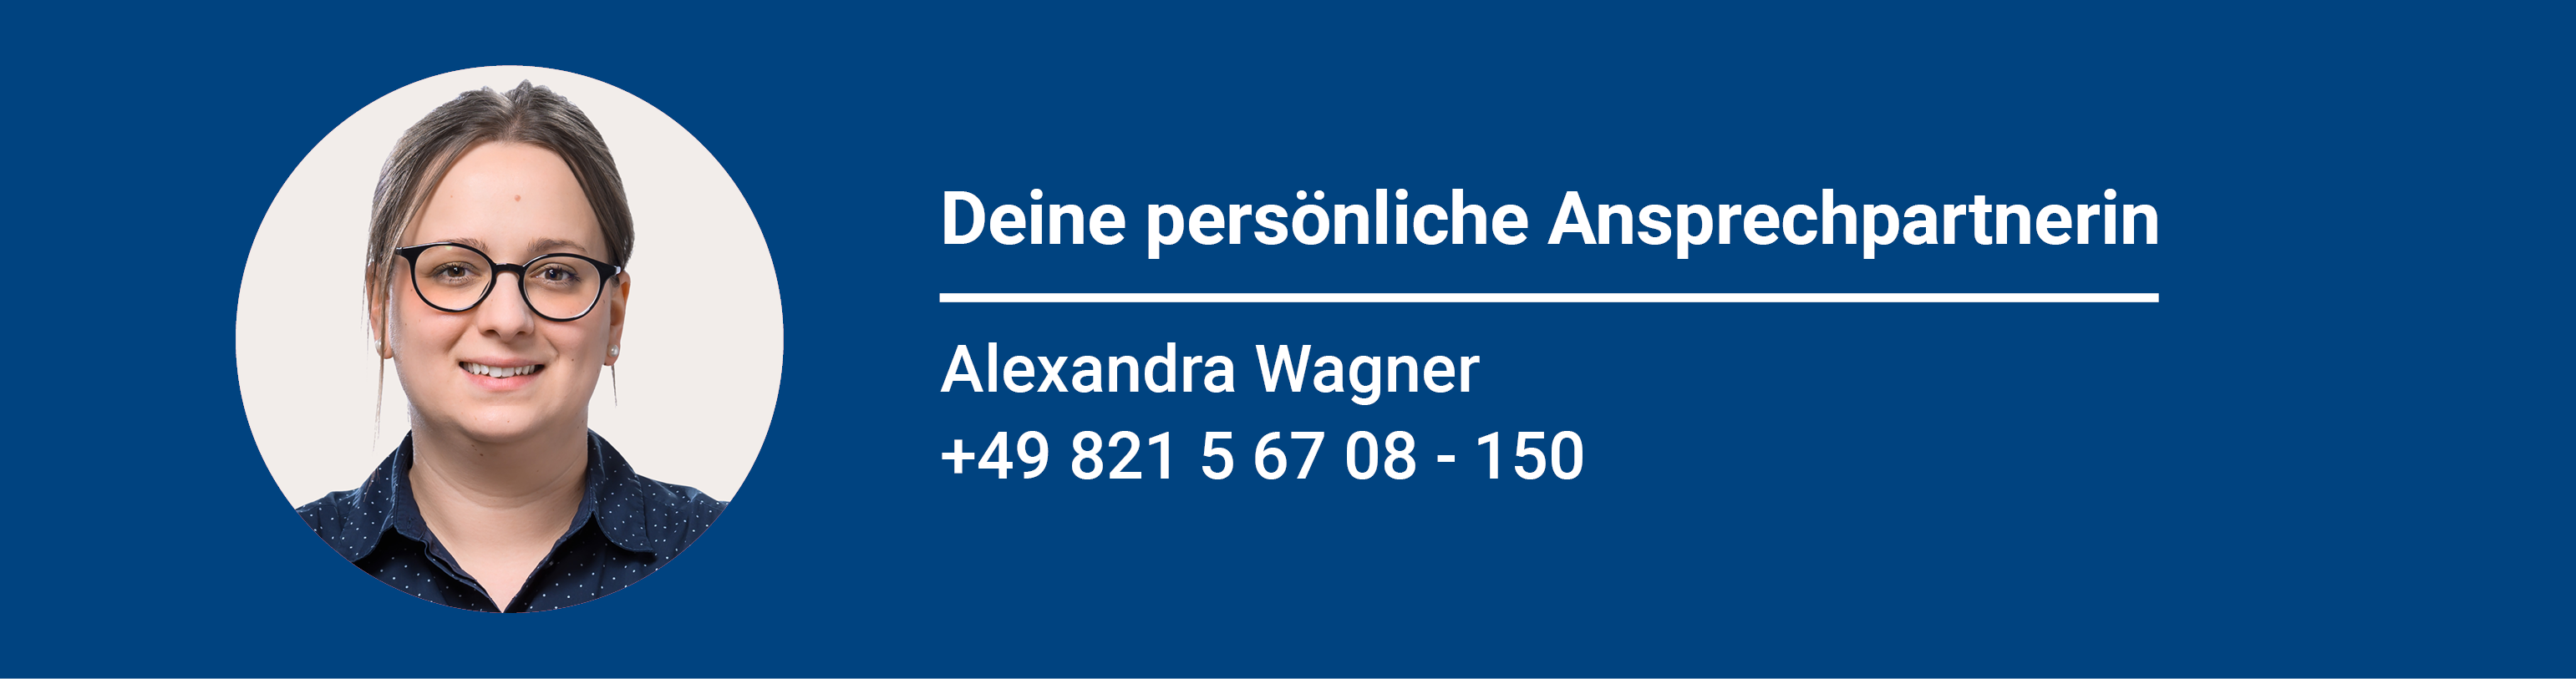 Personiobanner_Alexandra_Wagner_DE.png